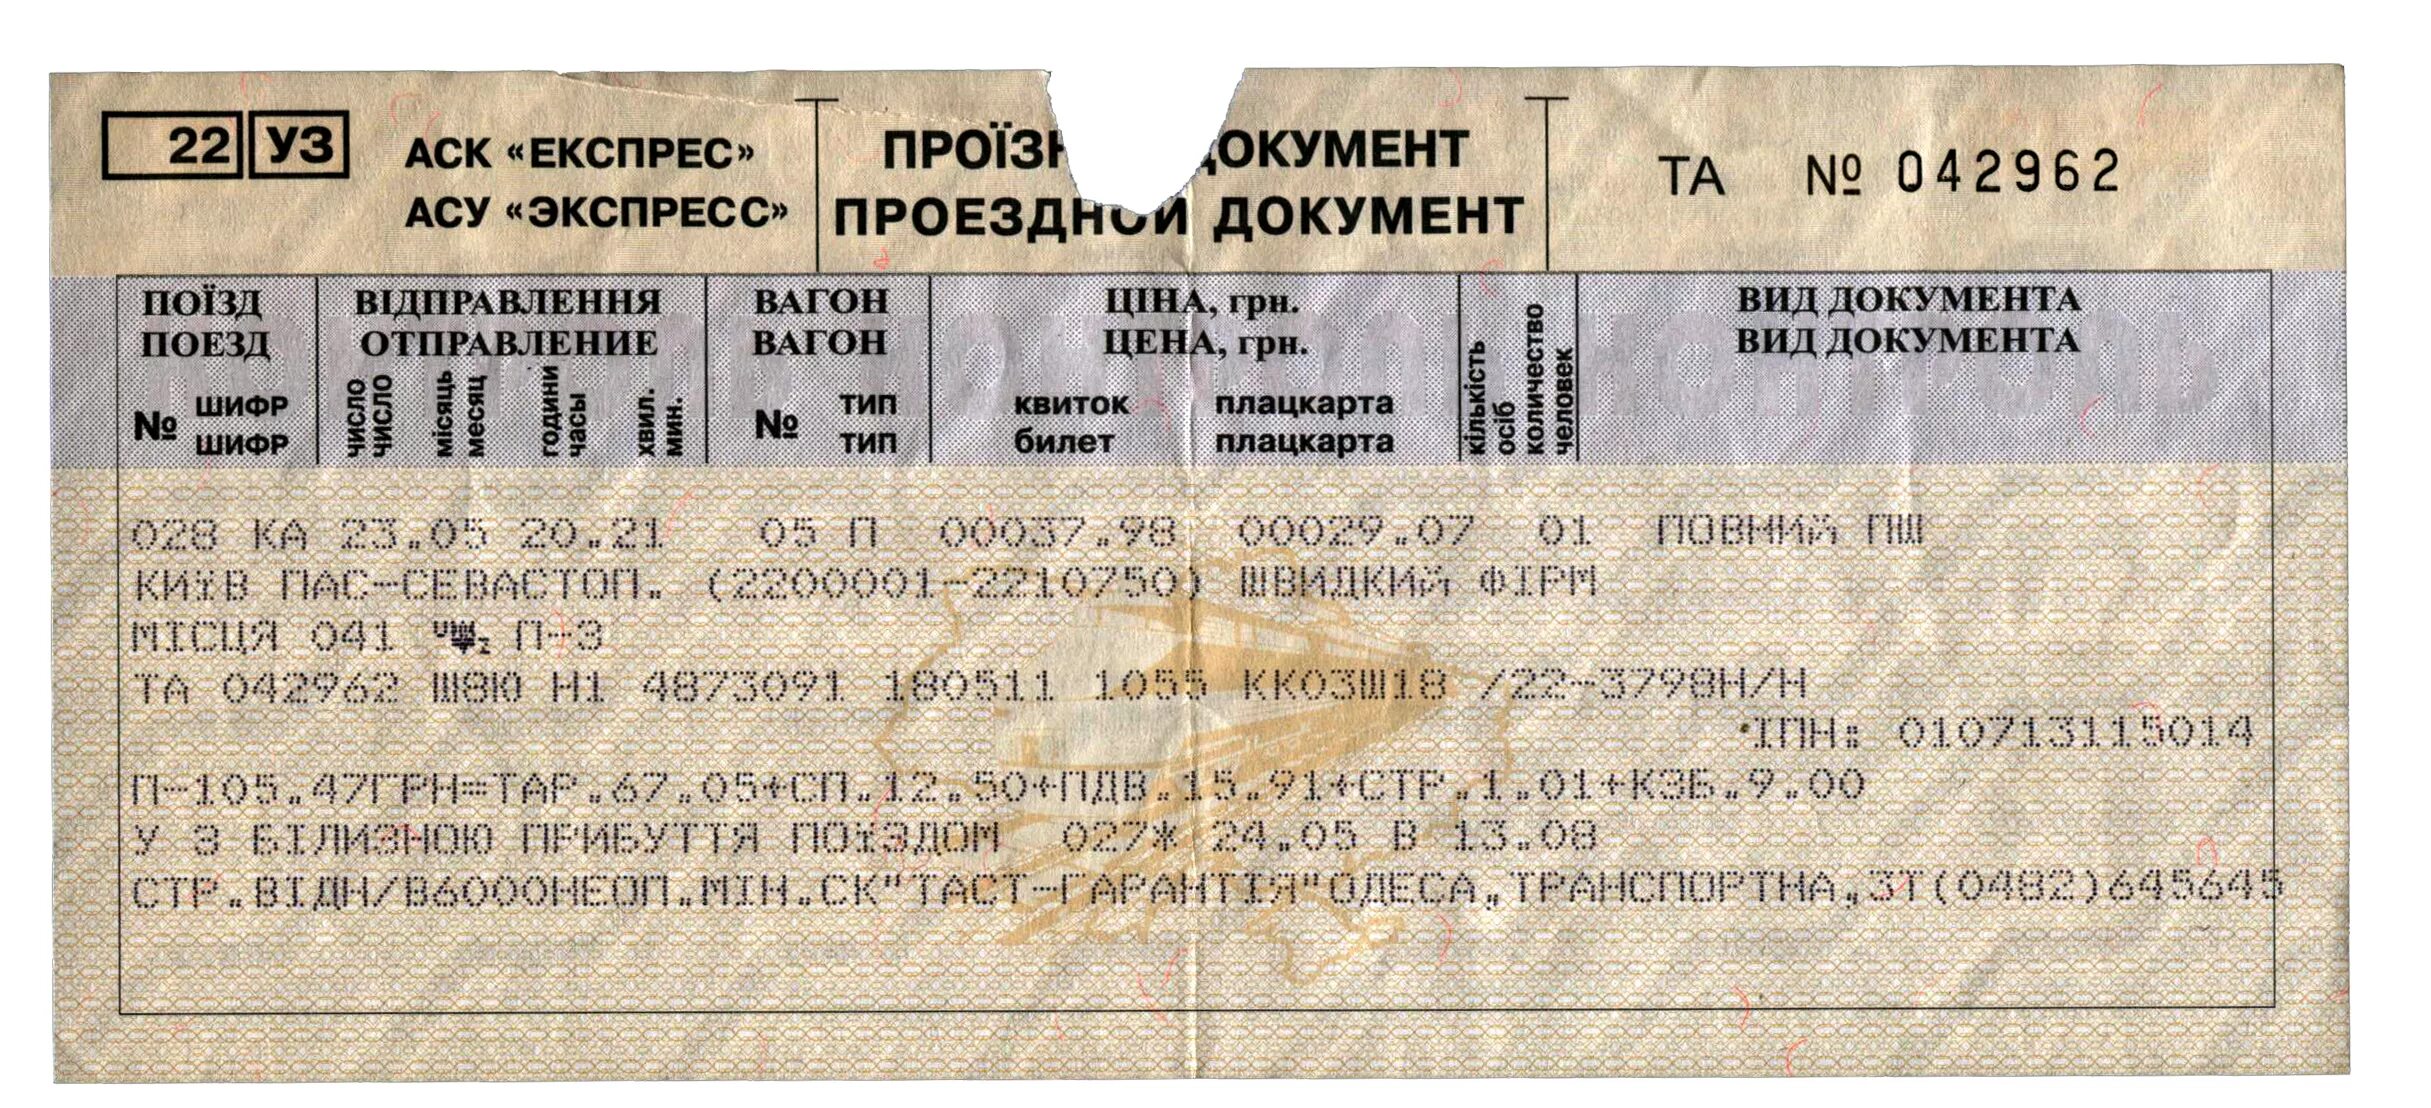 Белорусская железная дорога купить билет. Билет на поезд. Билеты ЖД на поезд. Железнодорожный билет билет. Билеты на поезд РЖД.